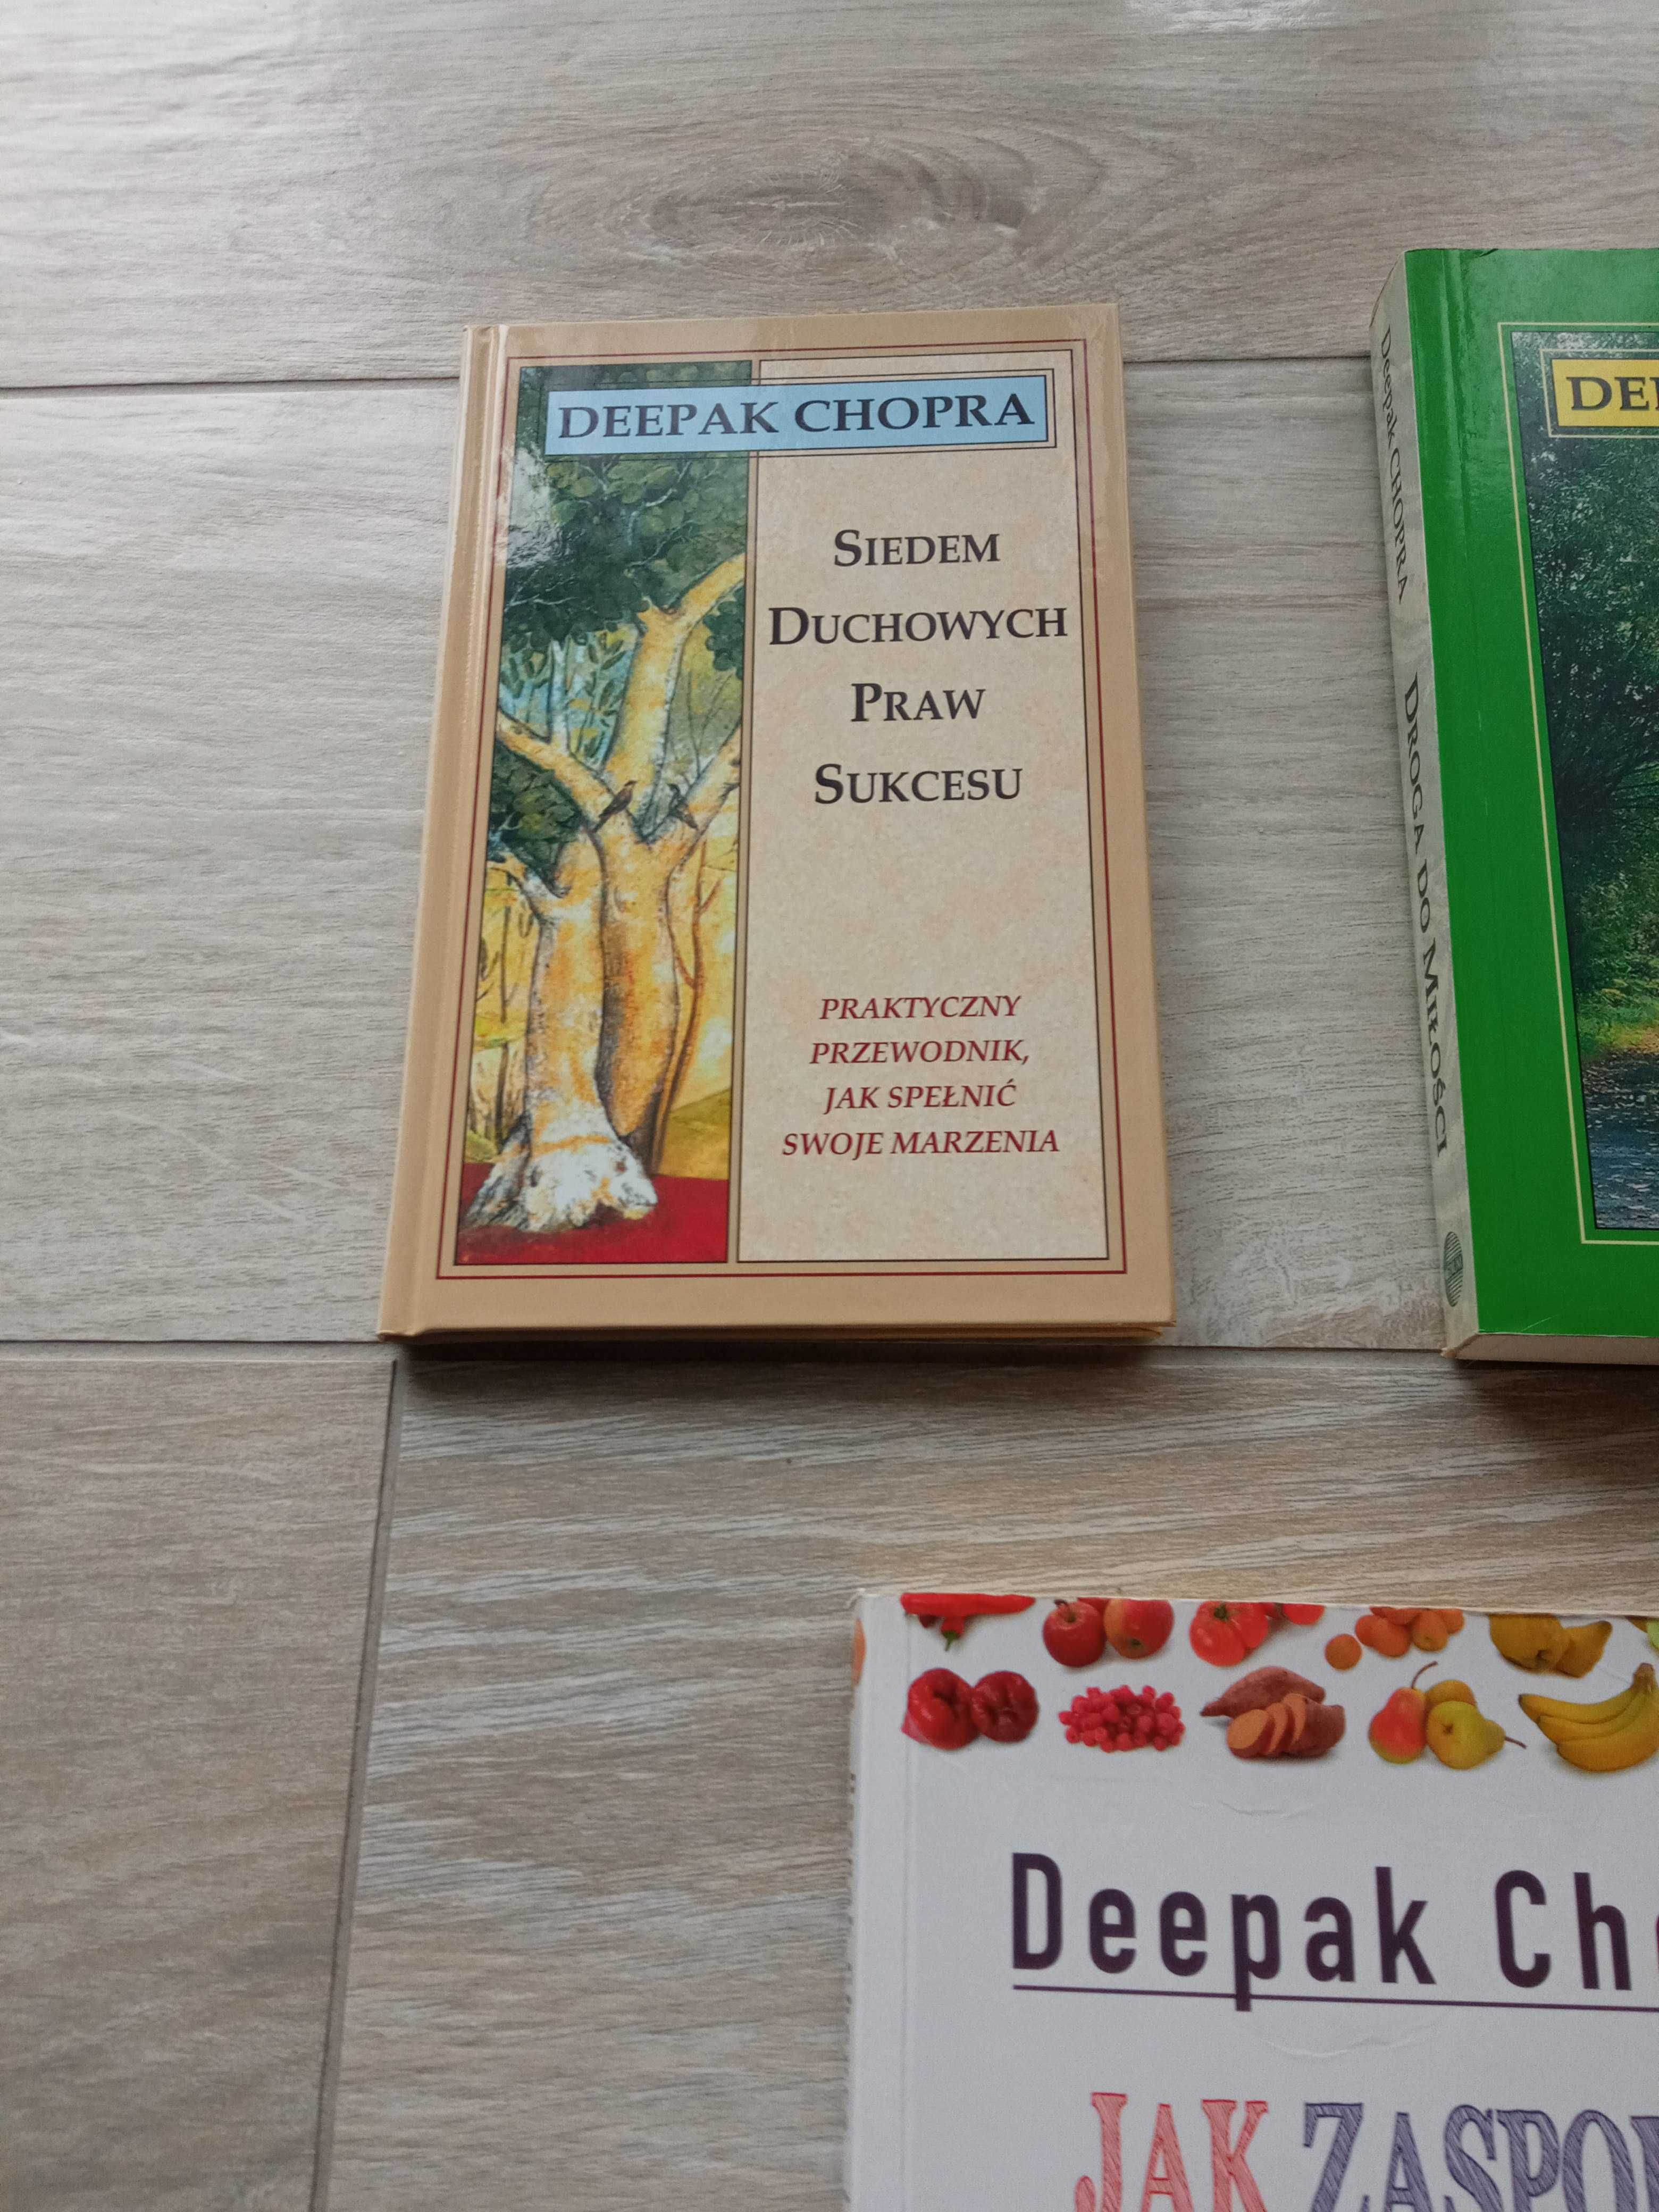 Deepak Chopra Jak zaspokoić apetyt, Droga do Miłości Siedem Duchownych